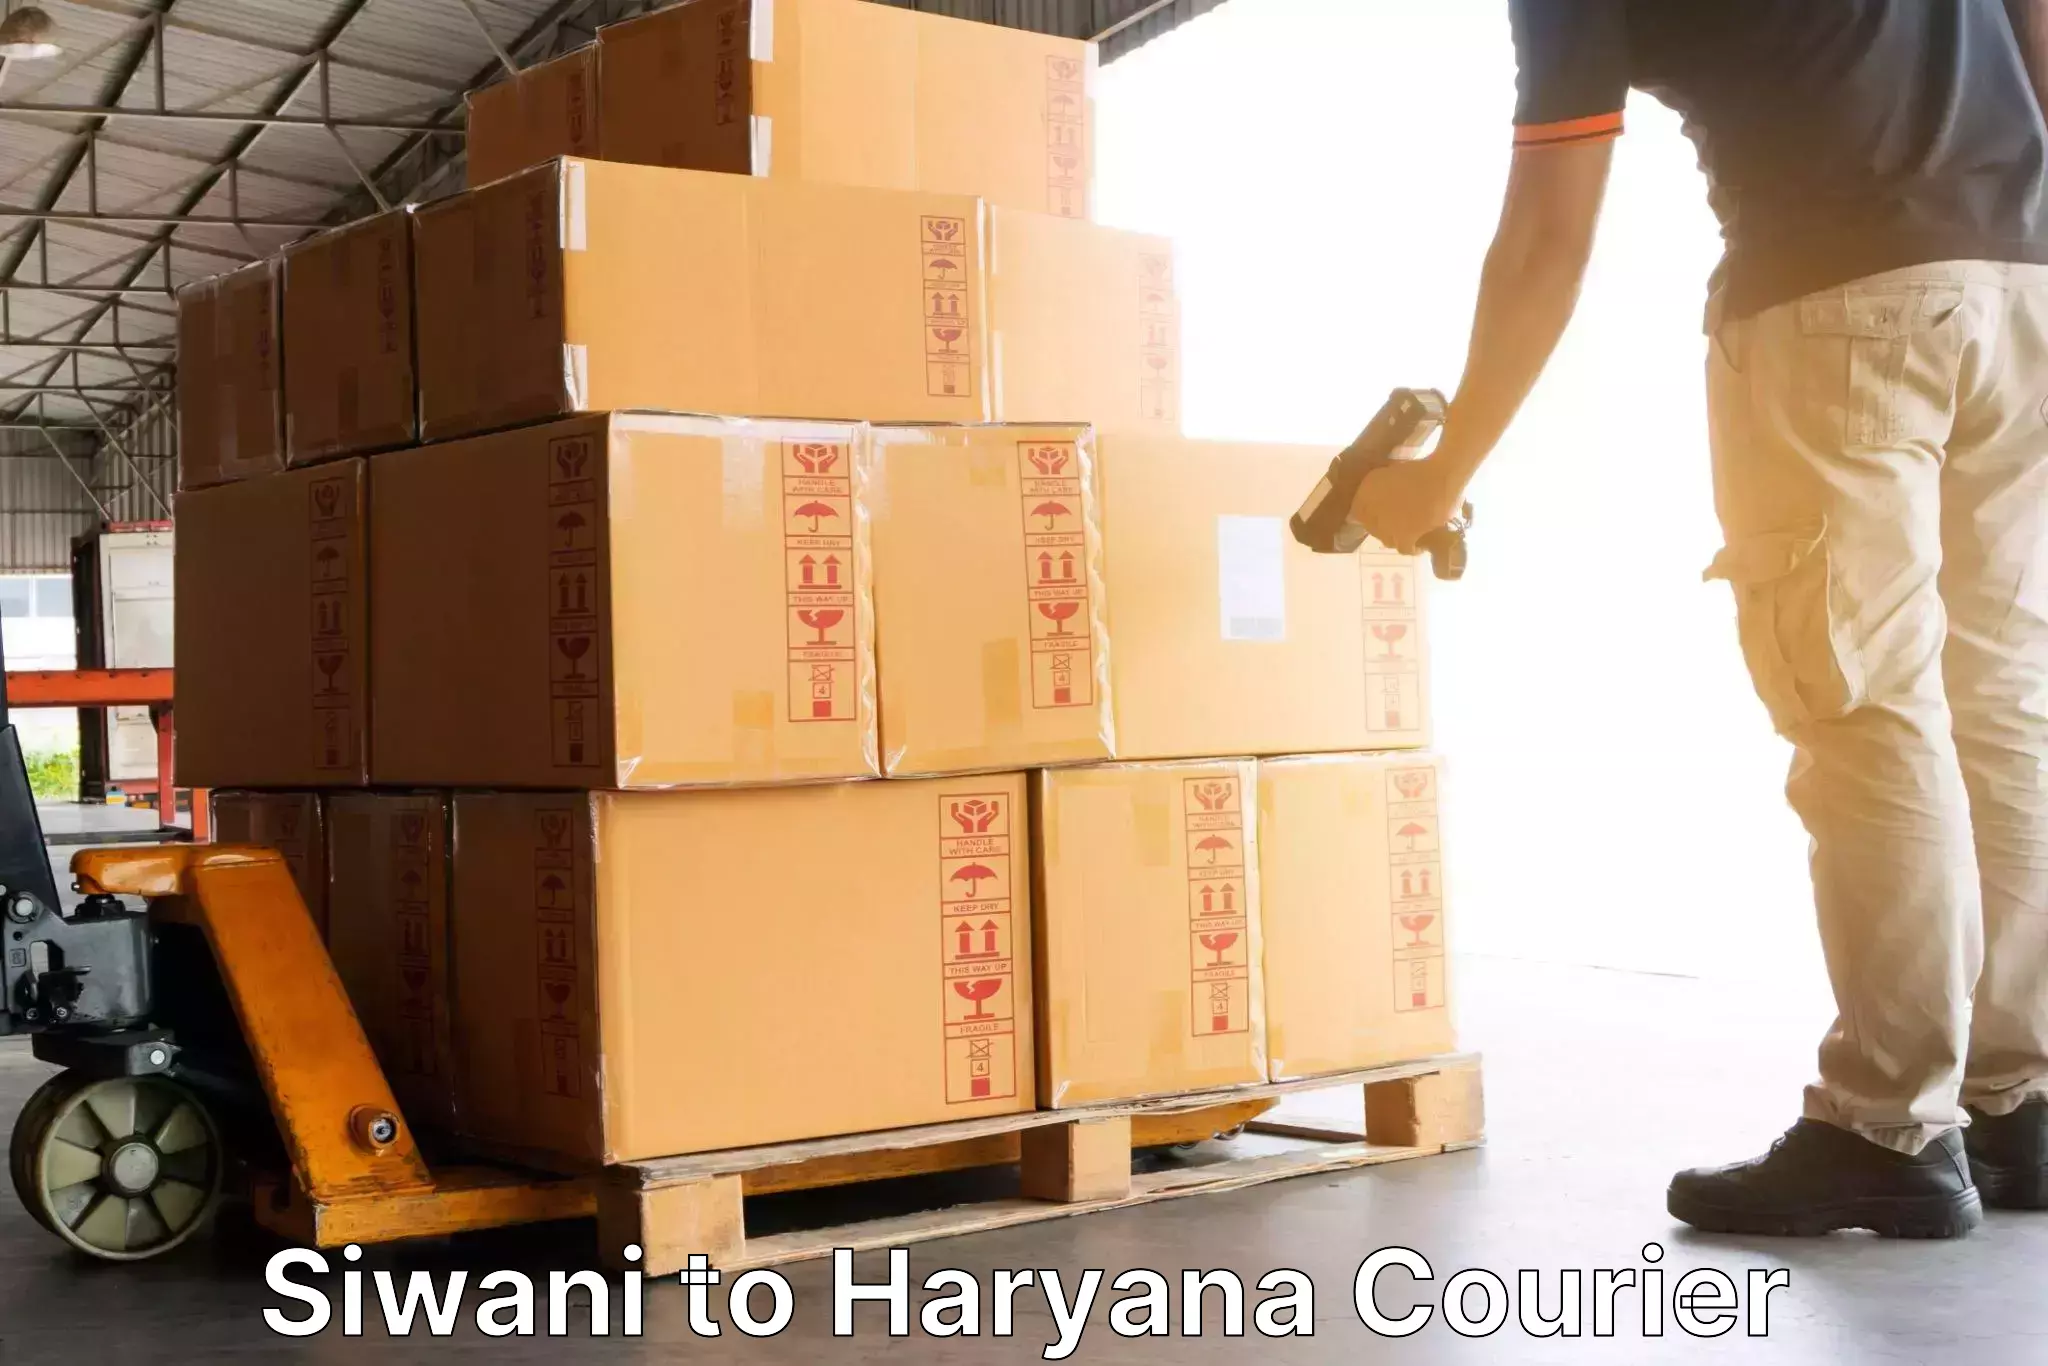 Express logistics service Siwani to Haryana